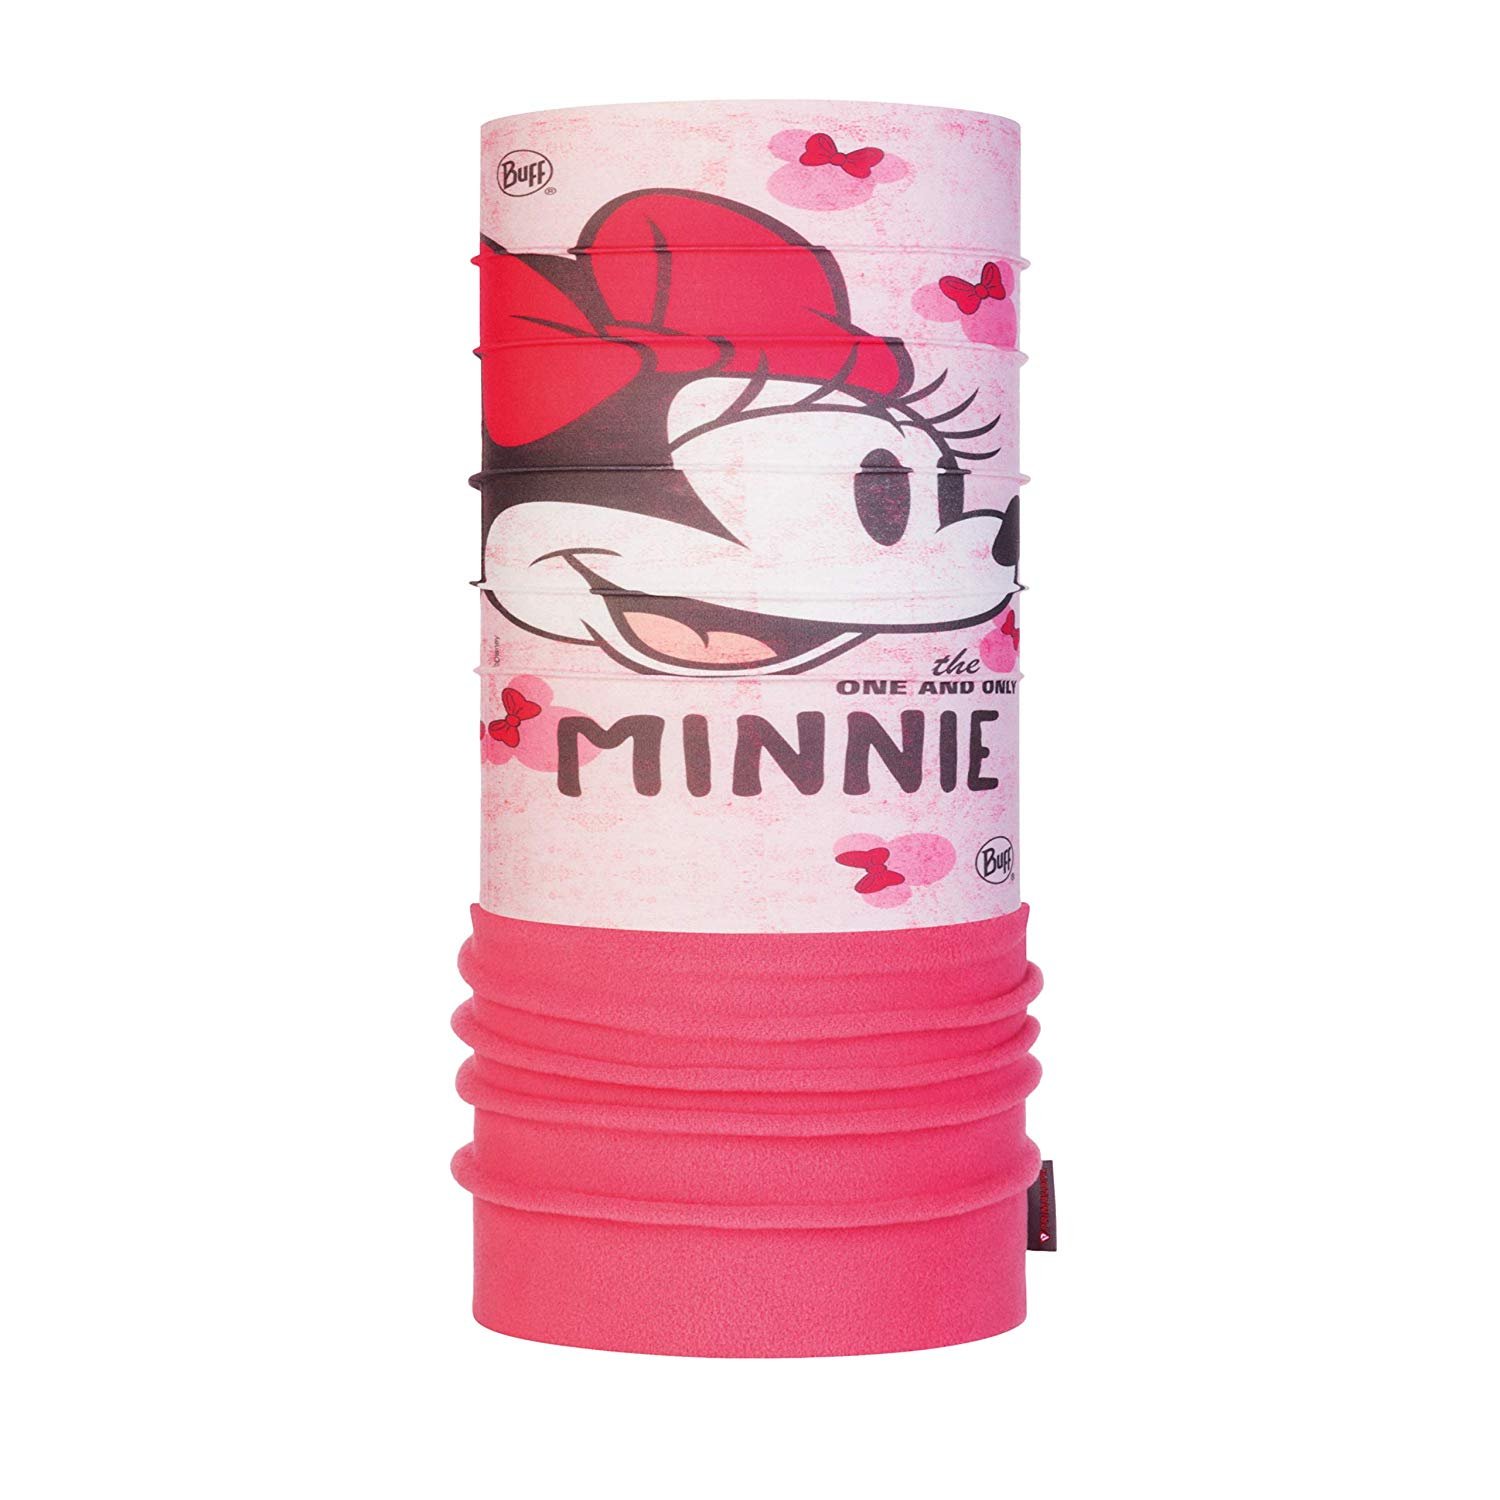 Бандана детская Buff Disney Minnie Polar Yoo-Hoo Pale Pink, 121582.508.10.00 бандана десткая buff junior polar savage pink 121626 538 10 00